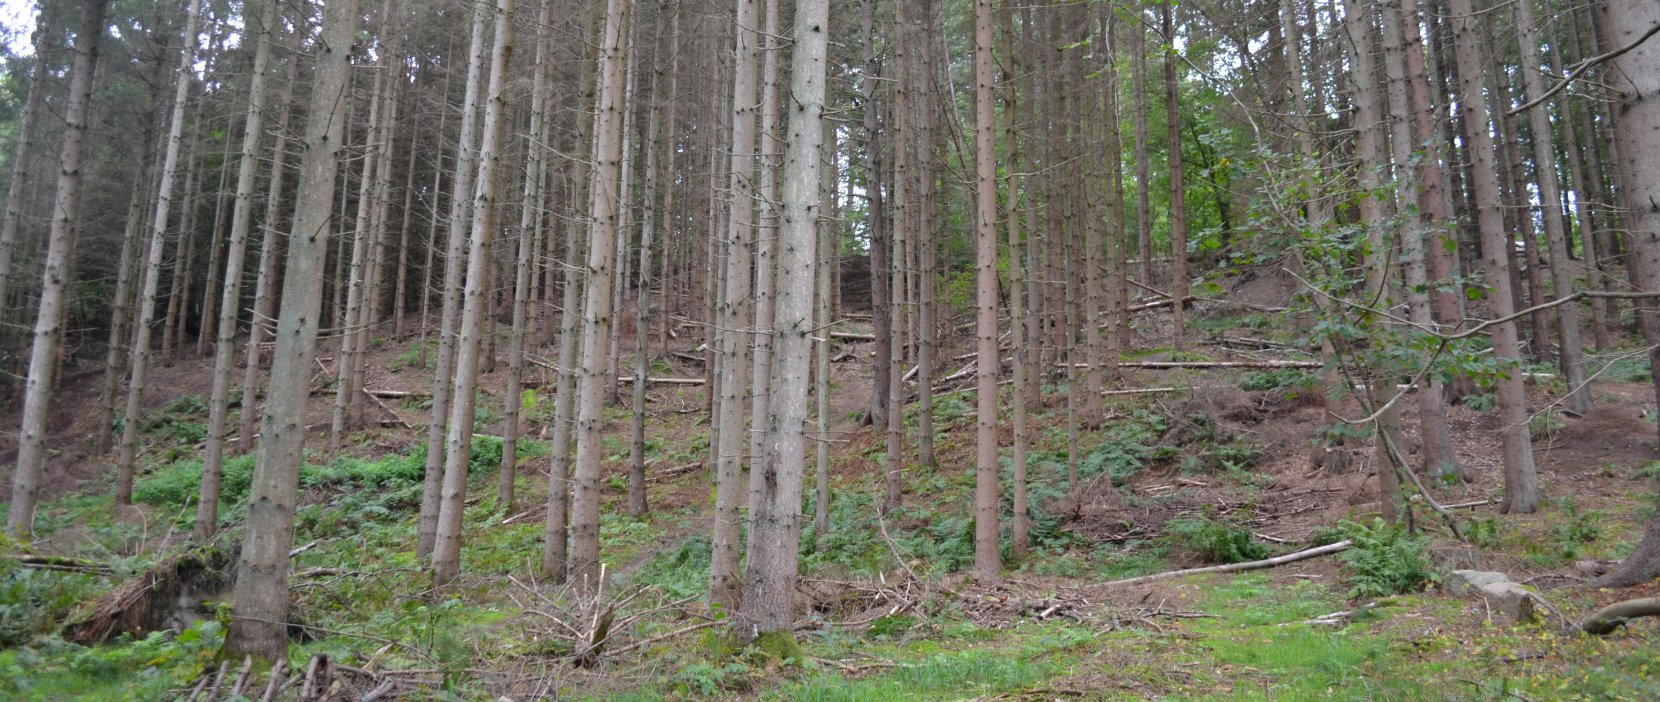 Foto: Højbjerg set gennem træerne